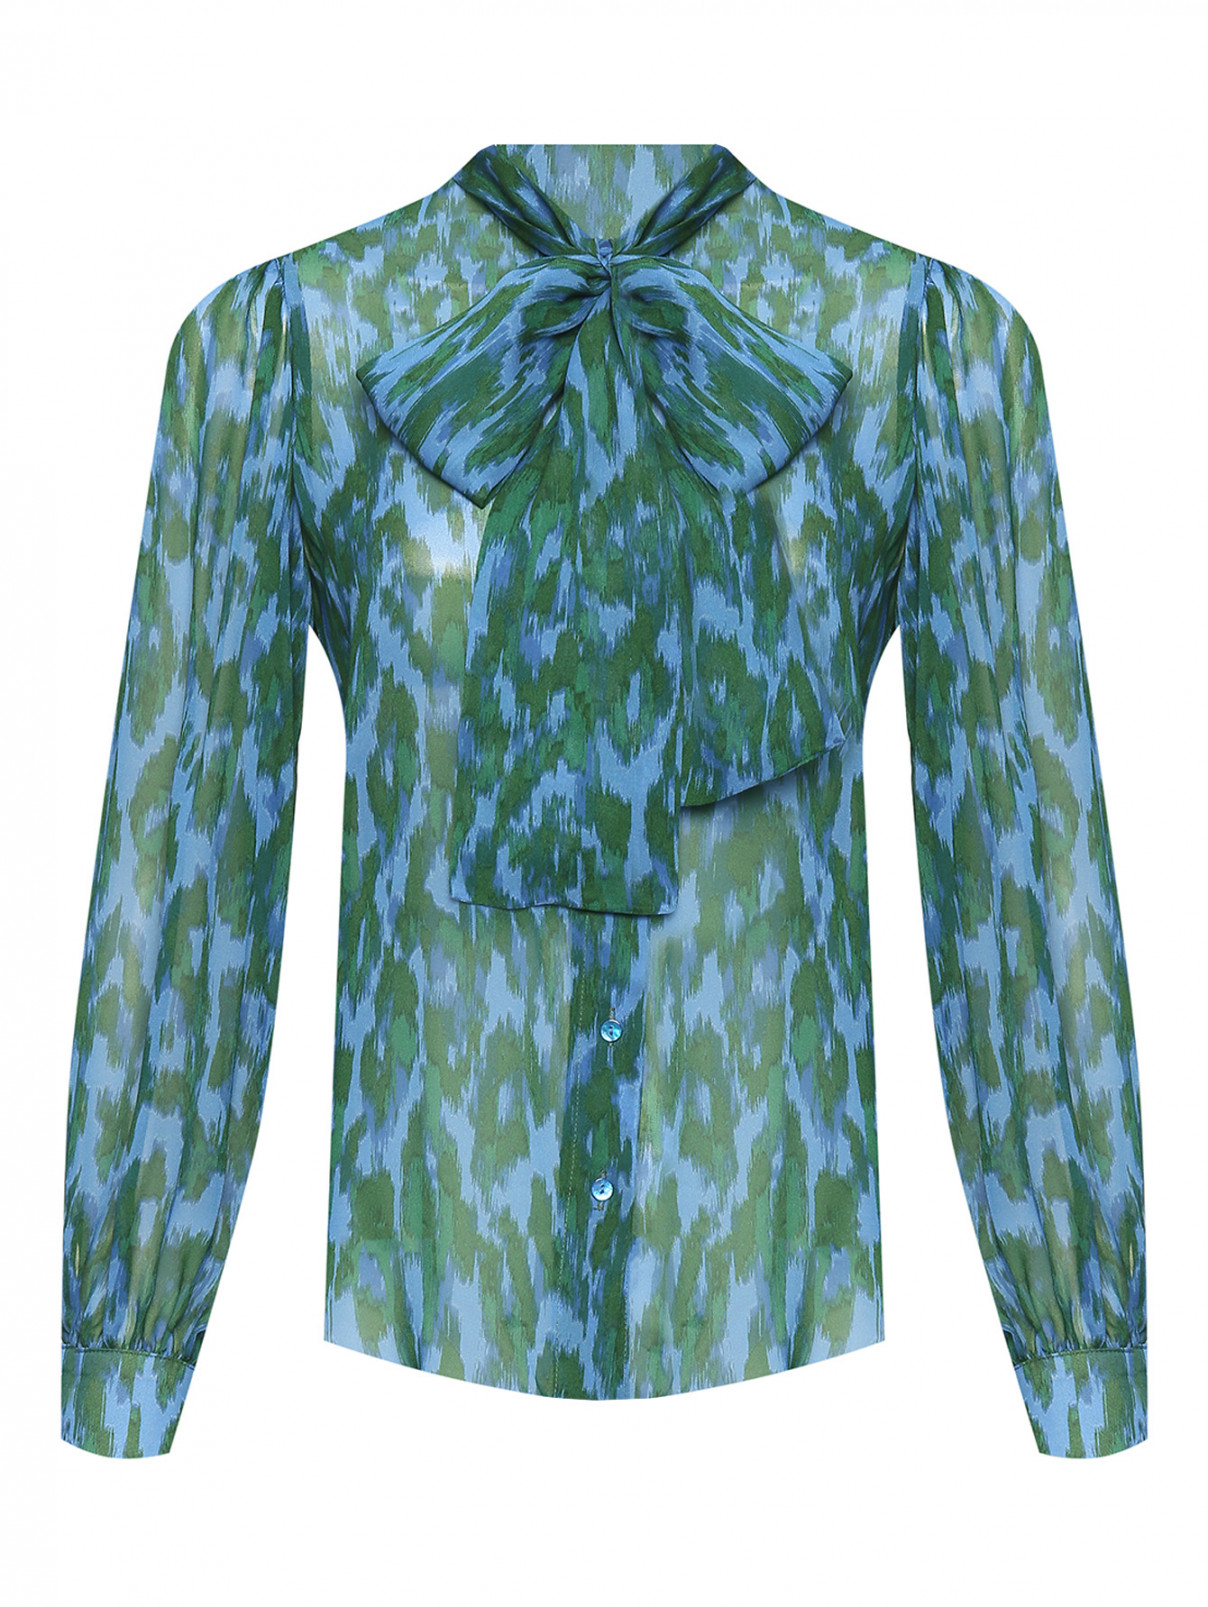 Полупрозрачная блуза с бантом Shade  –  Общий вид  – Цвет:  Узор